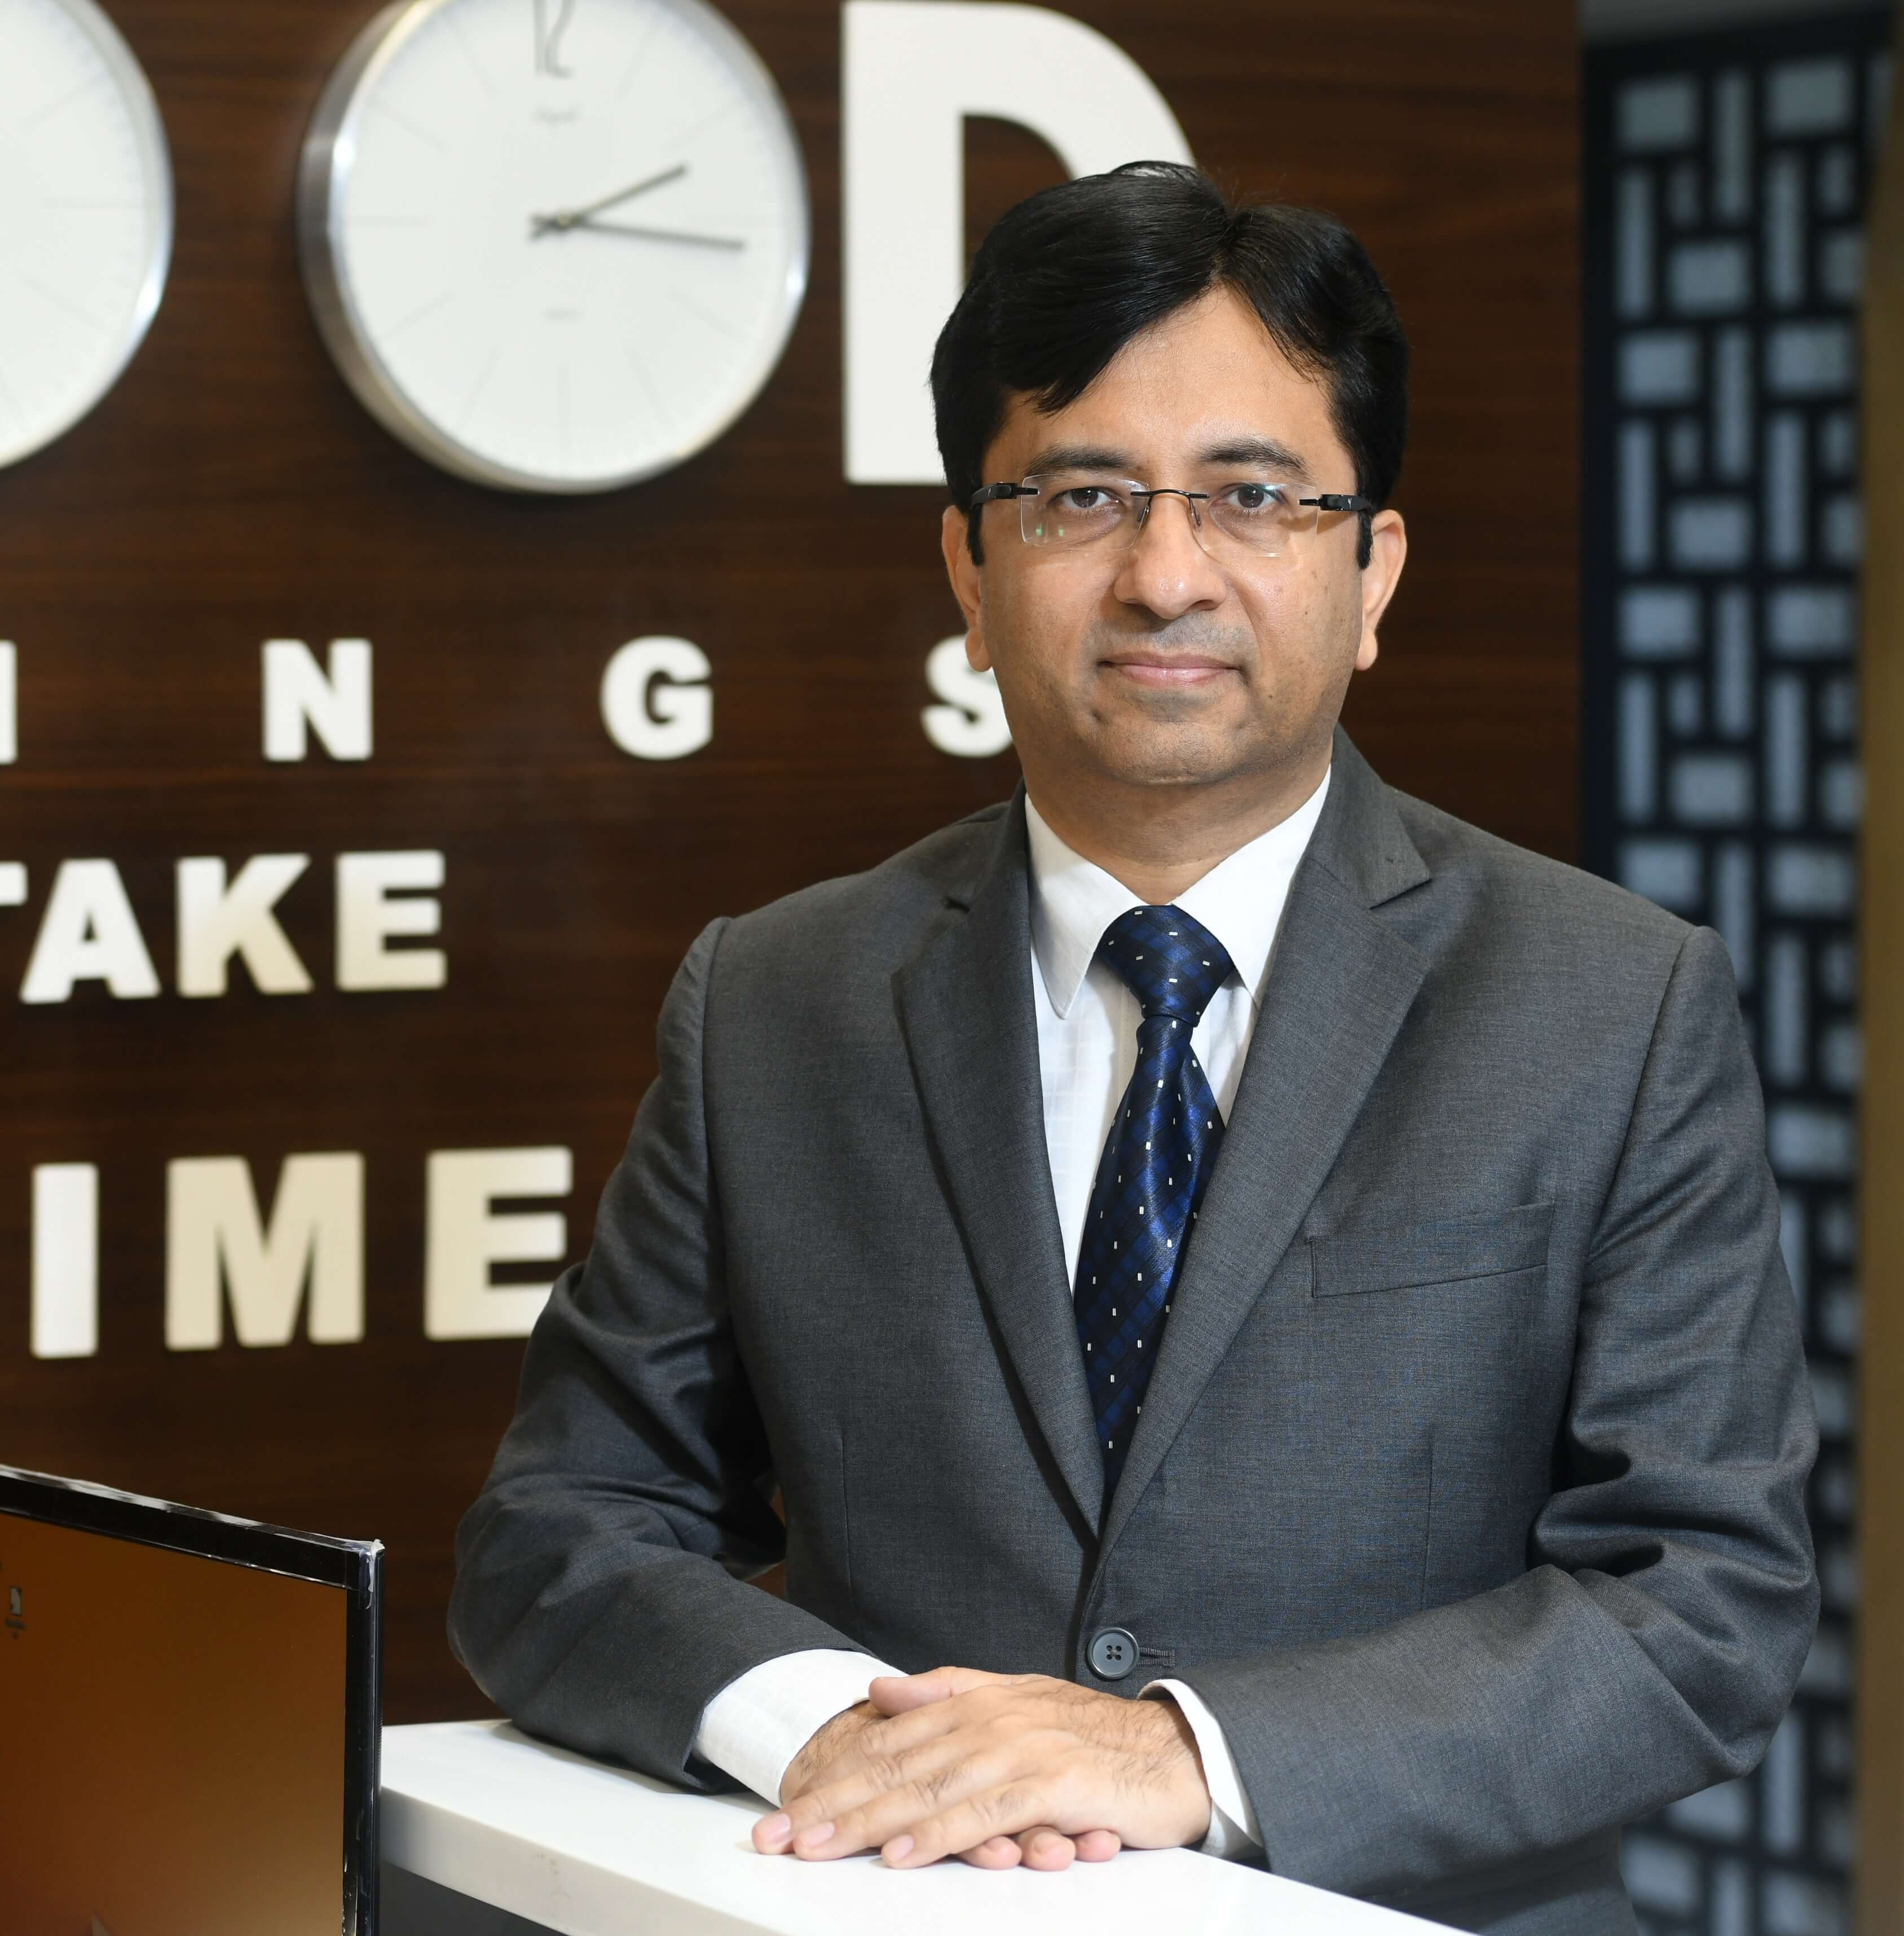 Rajeev Thakkar, CIO